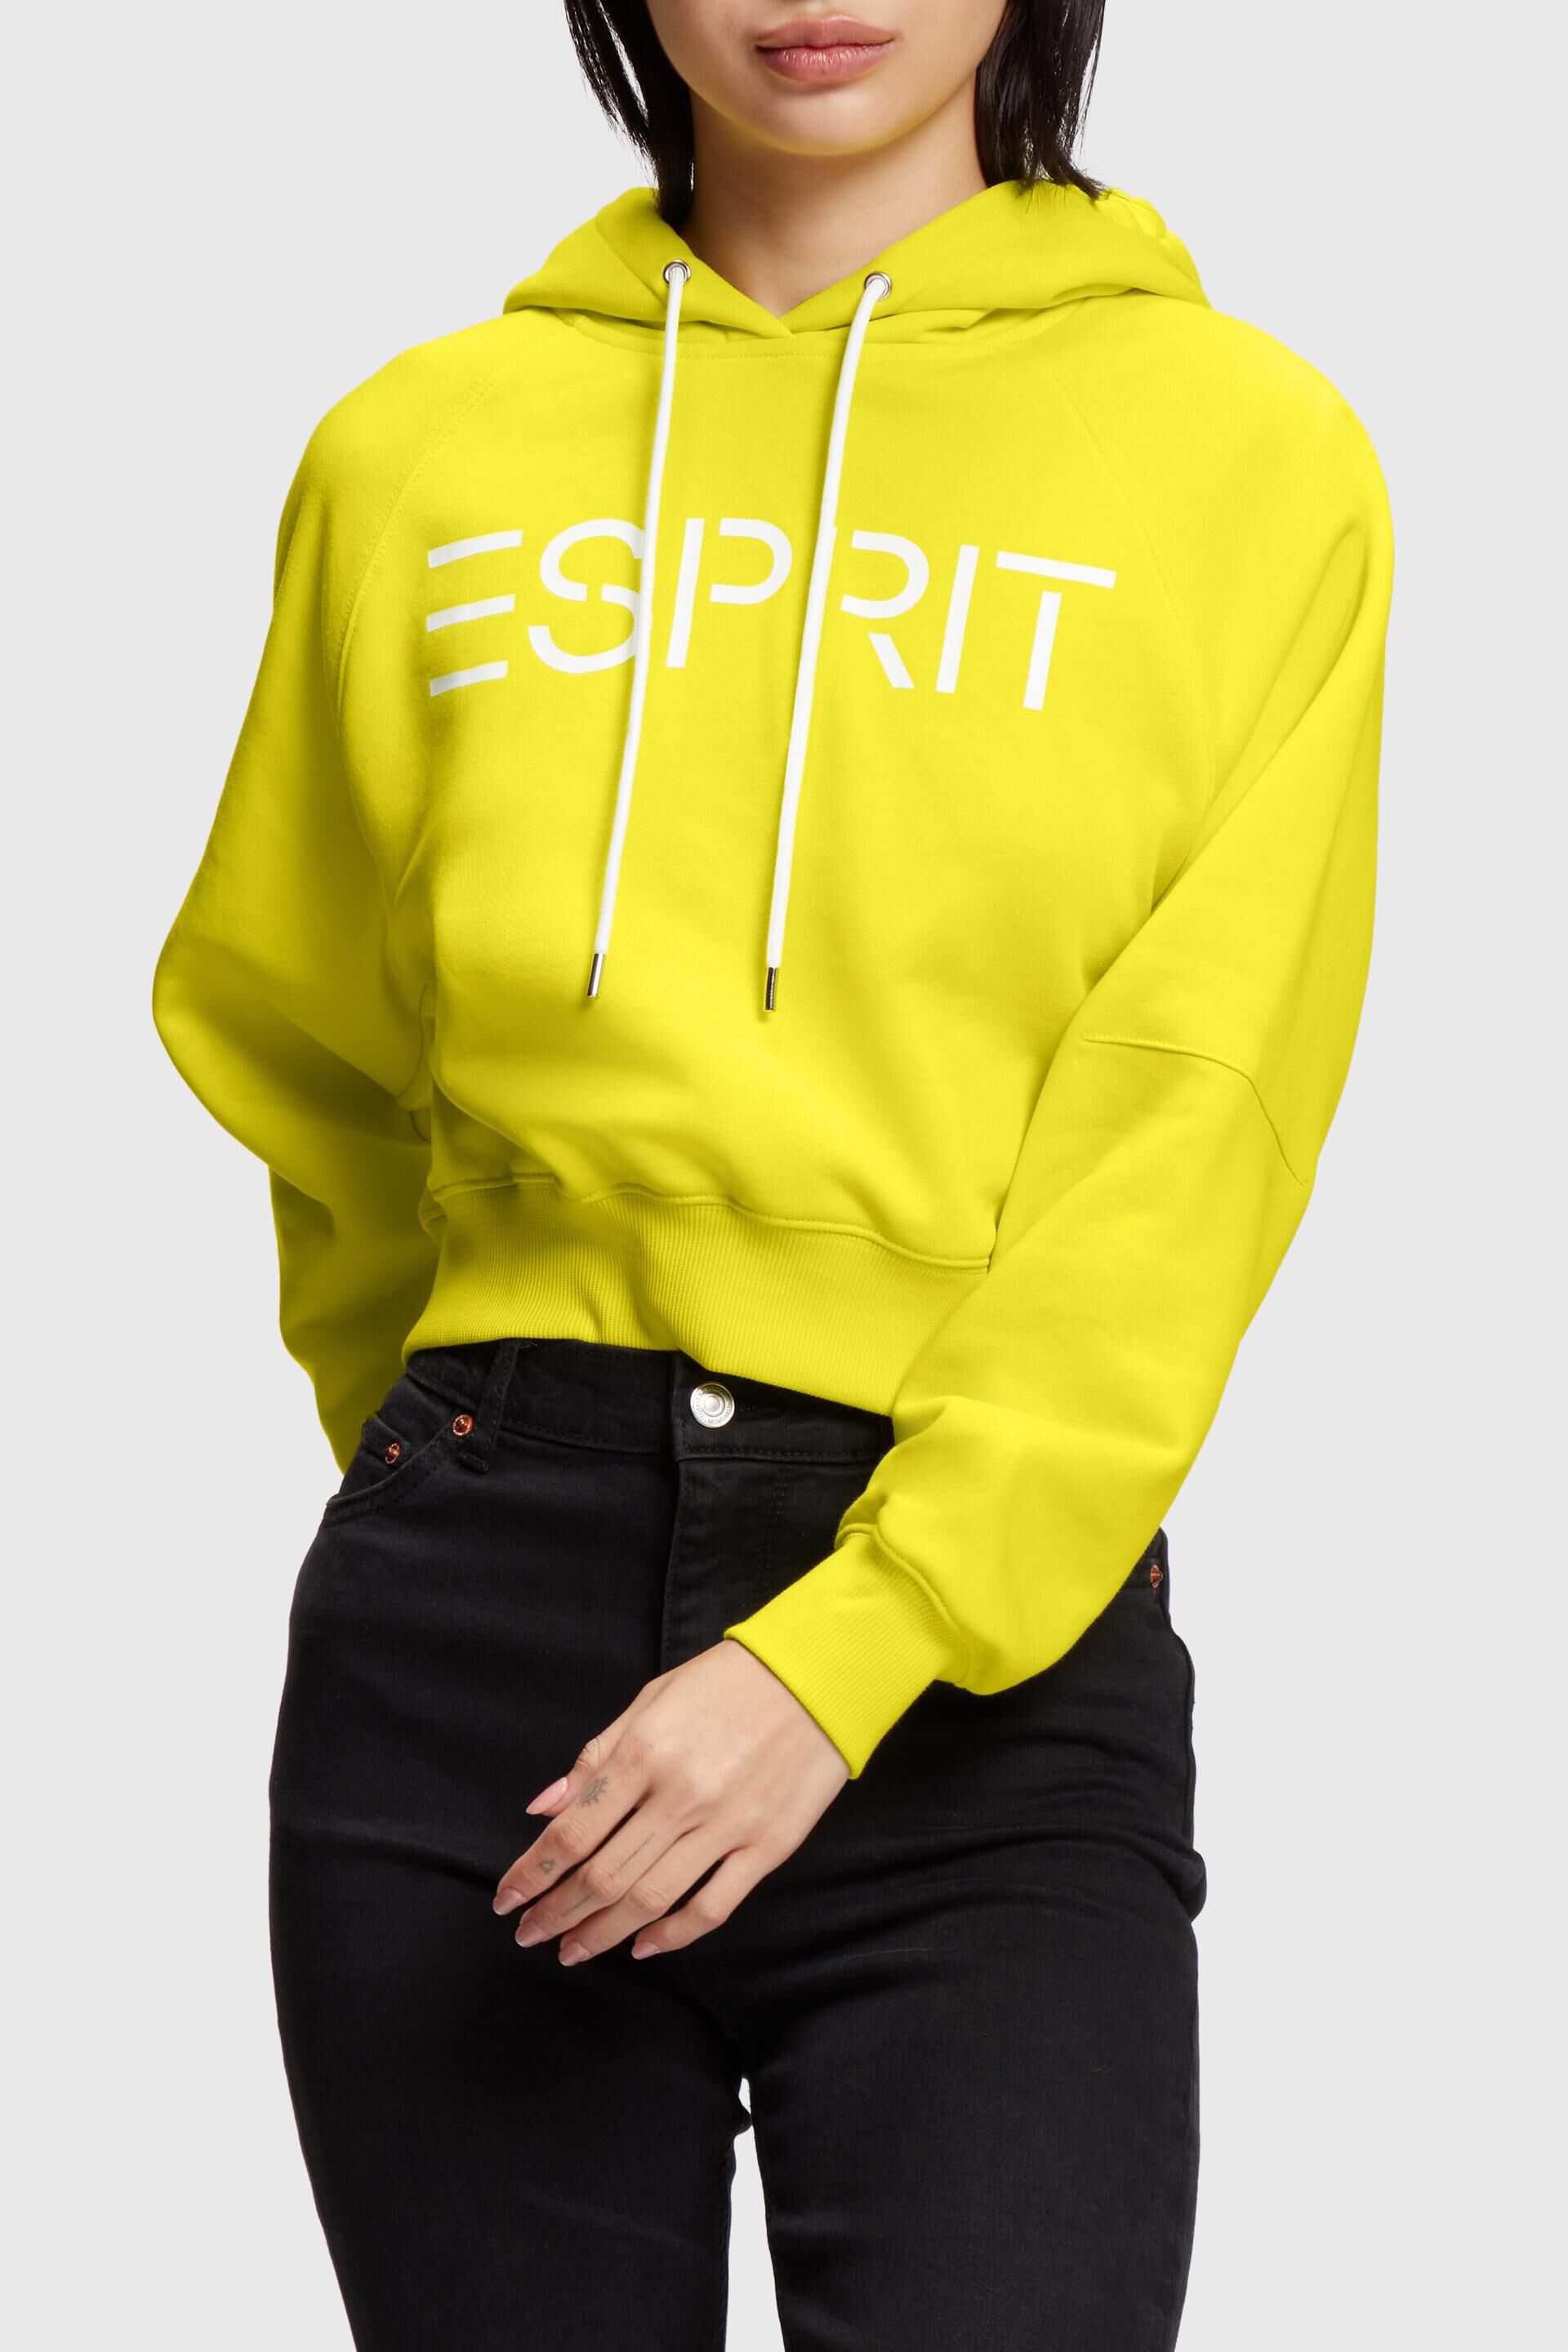 Esprit logo hoodie Cropped